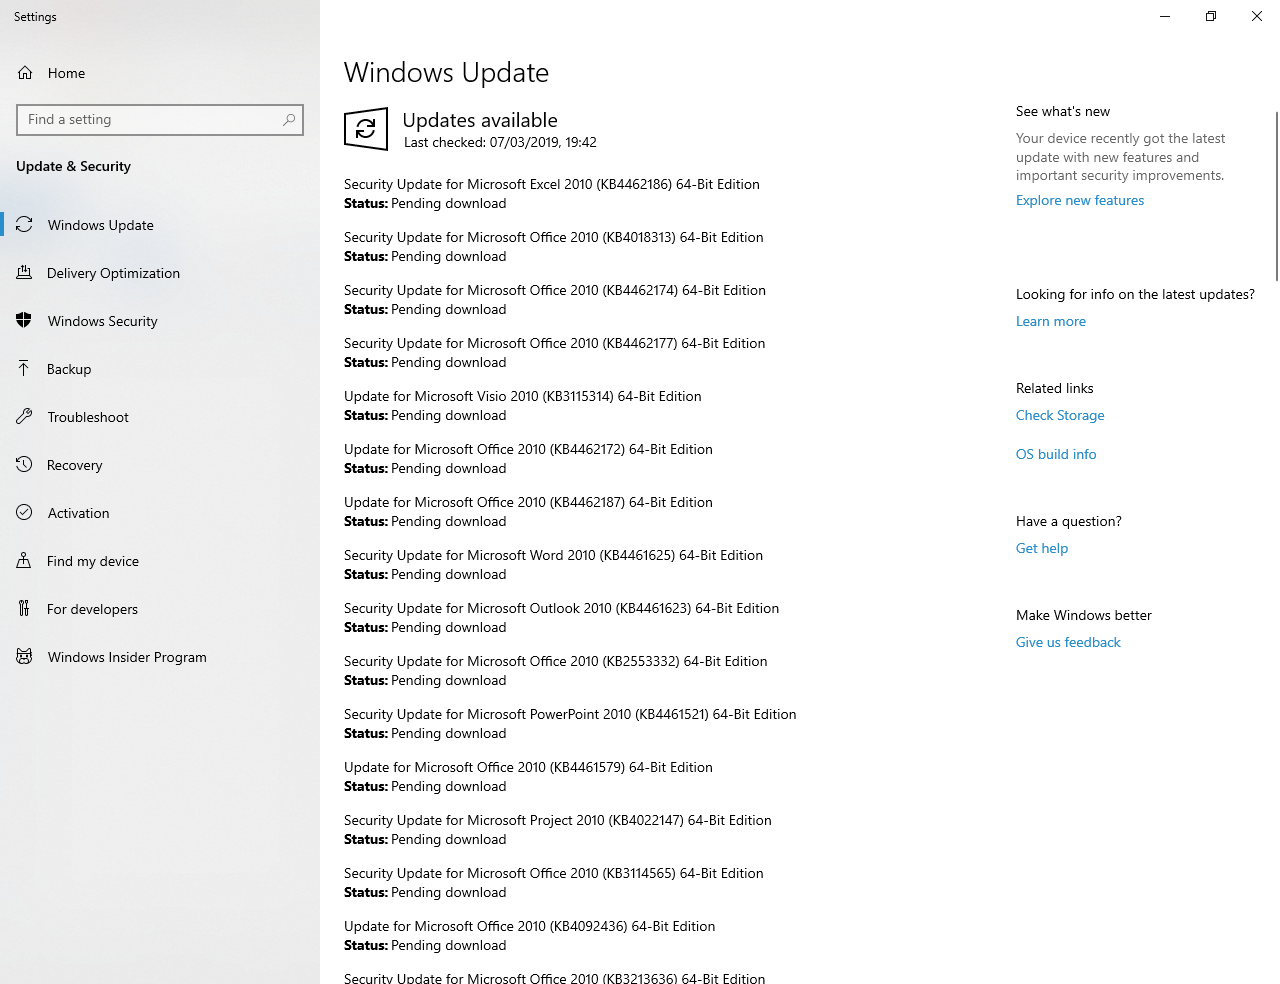 Fix Error in Windows Update 0eb8d636-d7da-4e6c-8c2c-58bfc4eac391?upload=true.png